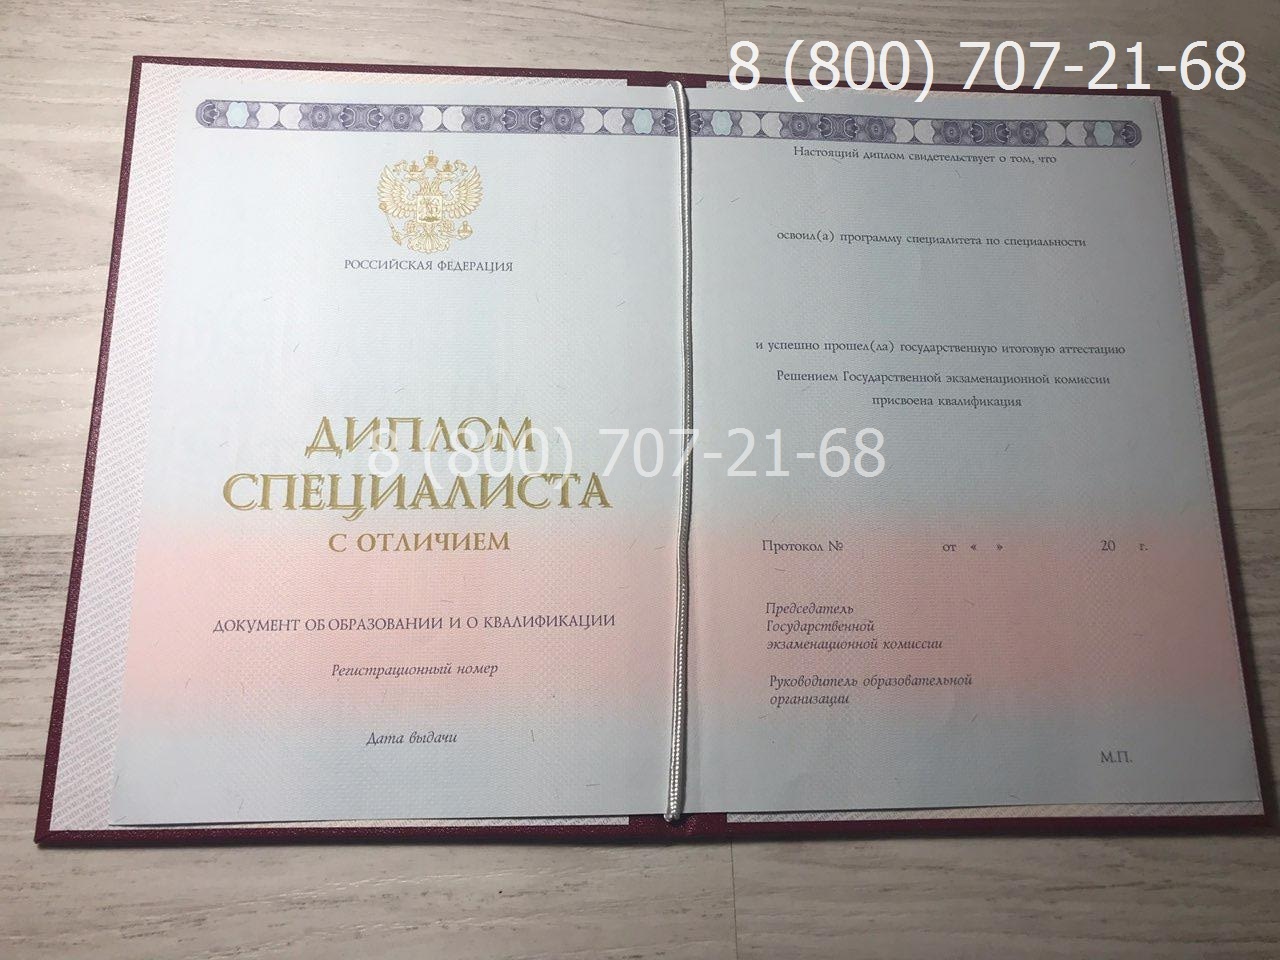 Диплом специалиста с отличием 2014-2019 года 1